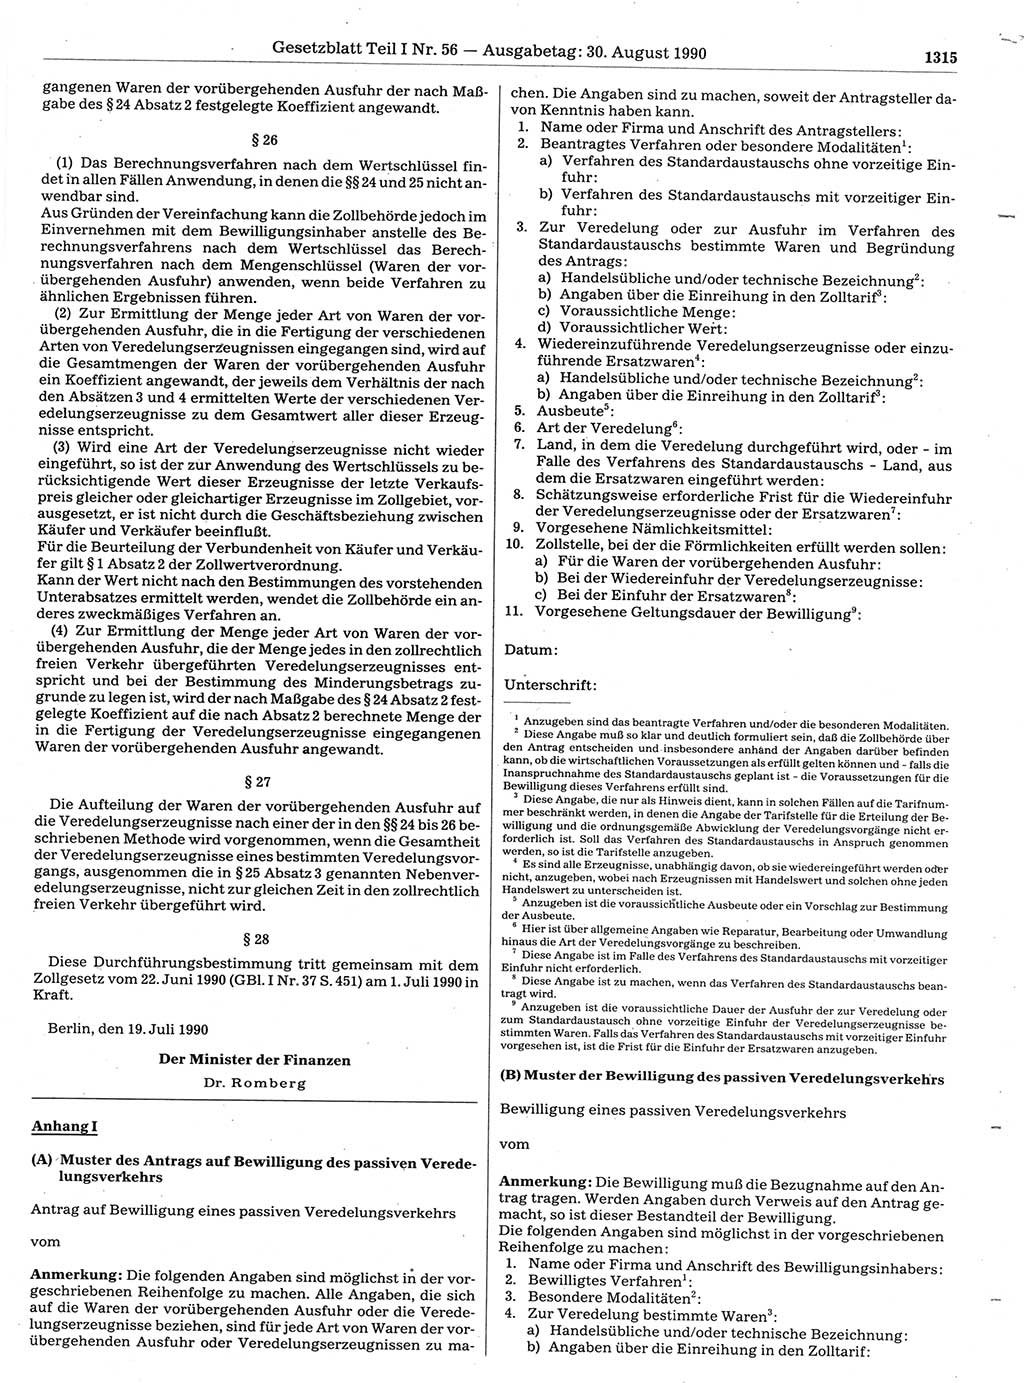 Gesetzblatt (GBl.) der Deutschen Demokratischen Republik (DDR) Teil Ⅰ 1990, Seite 1315 (GBl. DDR Ⅰ 1990, S. 1315)